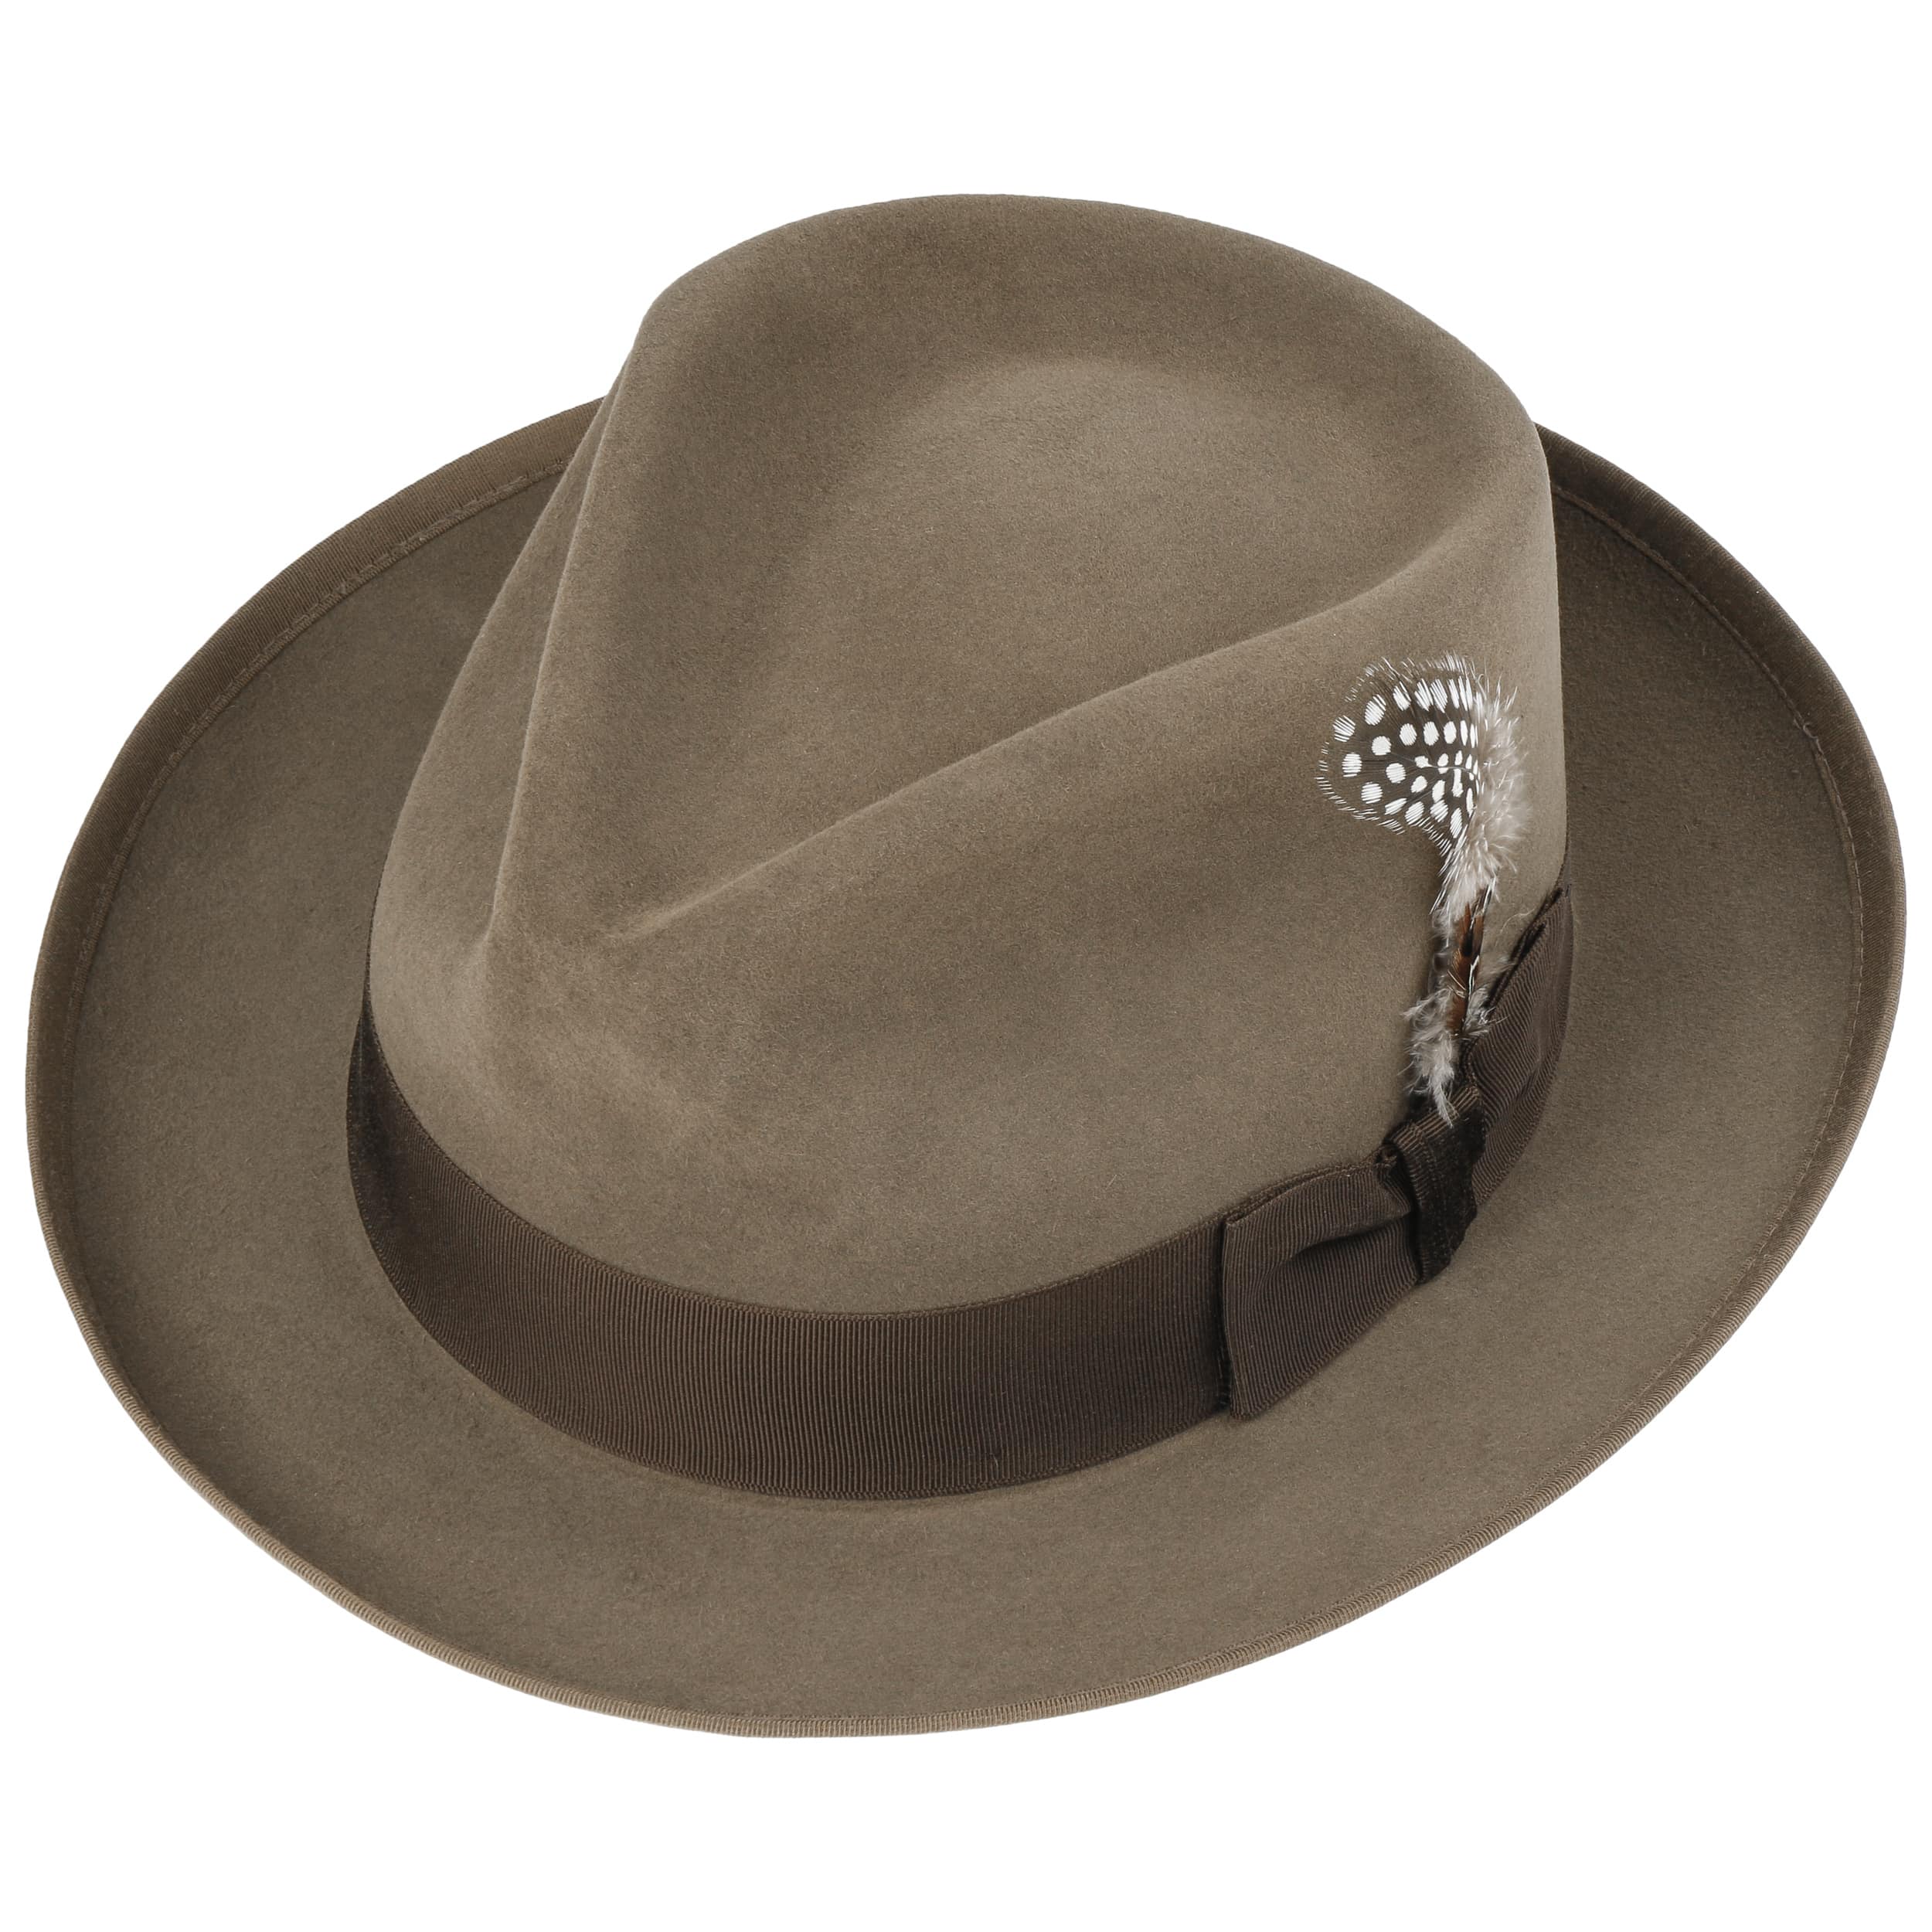 Whippet VitaFelt Fur Bogart Hat by Stetson - 299,00 €